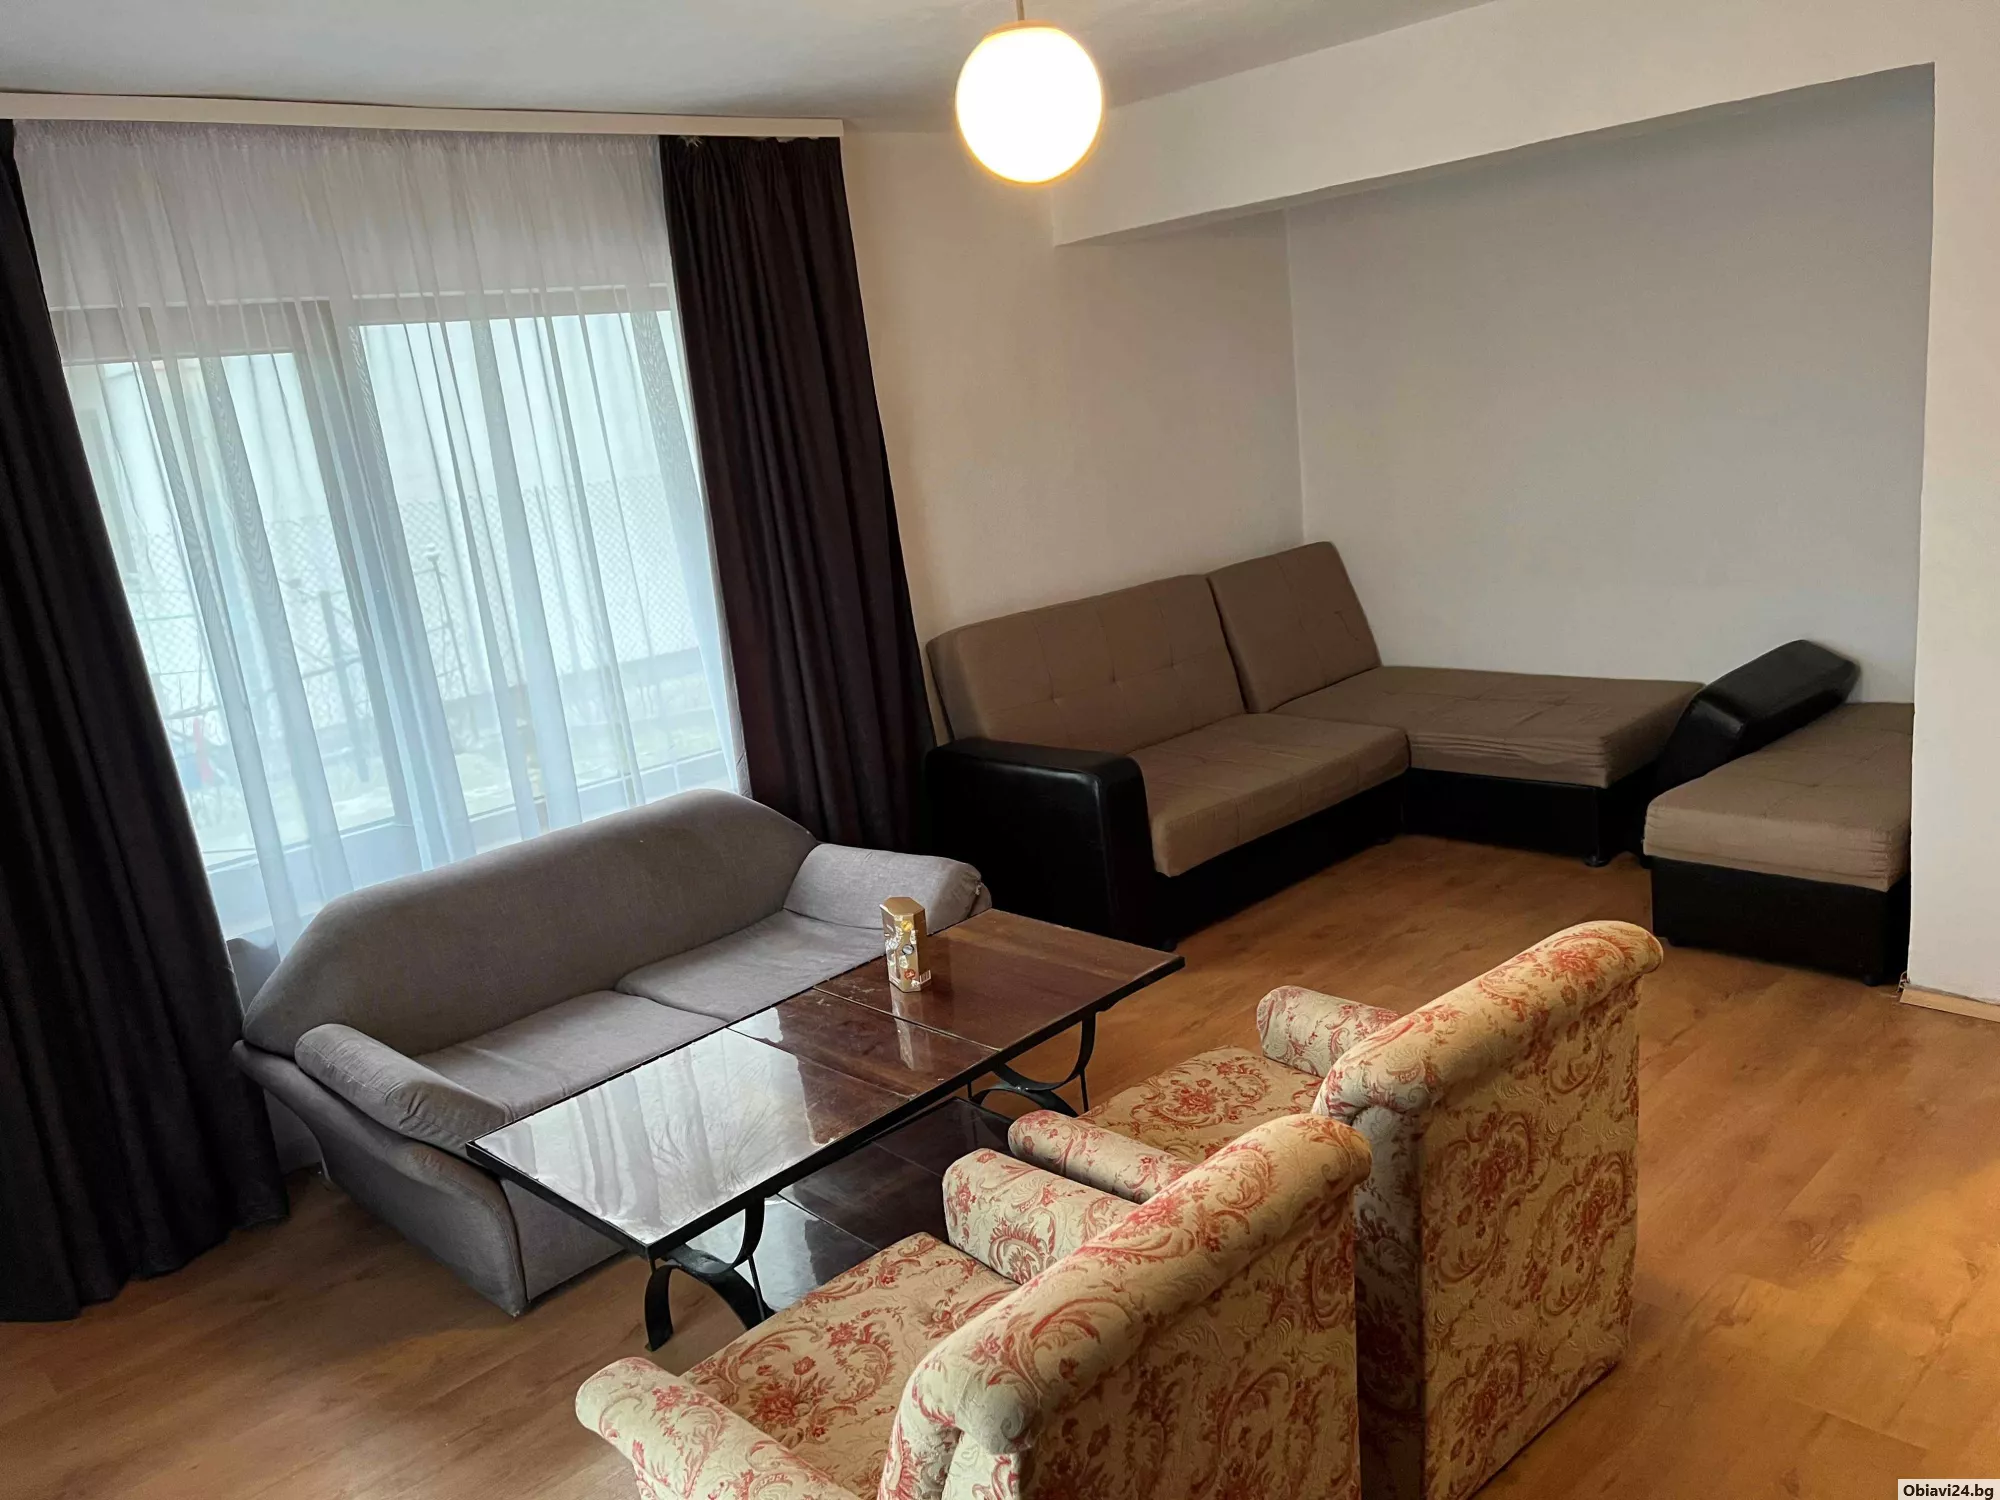 Самостоятелен апартамент, част от къща - obiavi24.bg